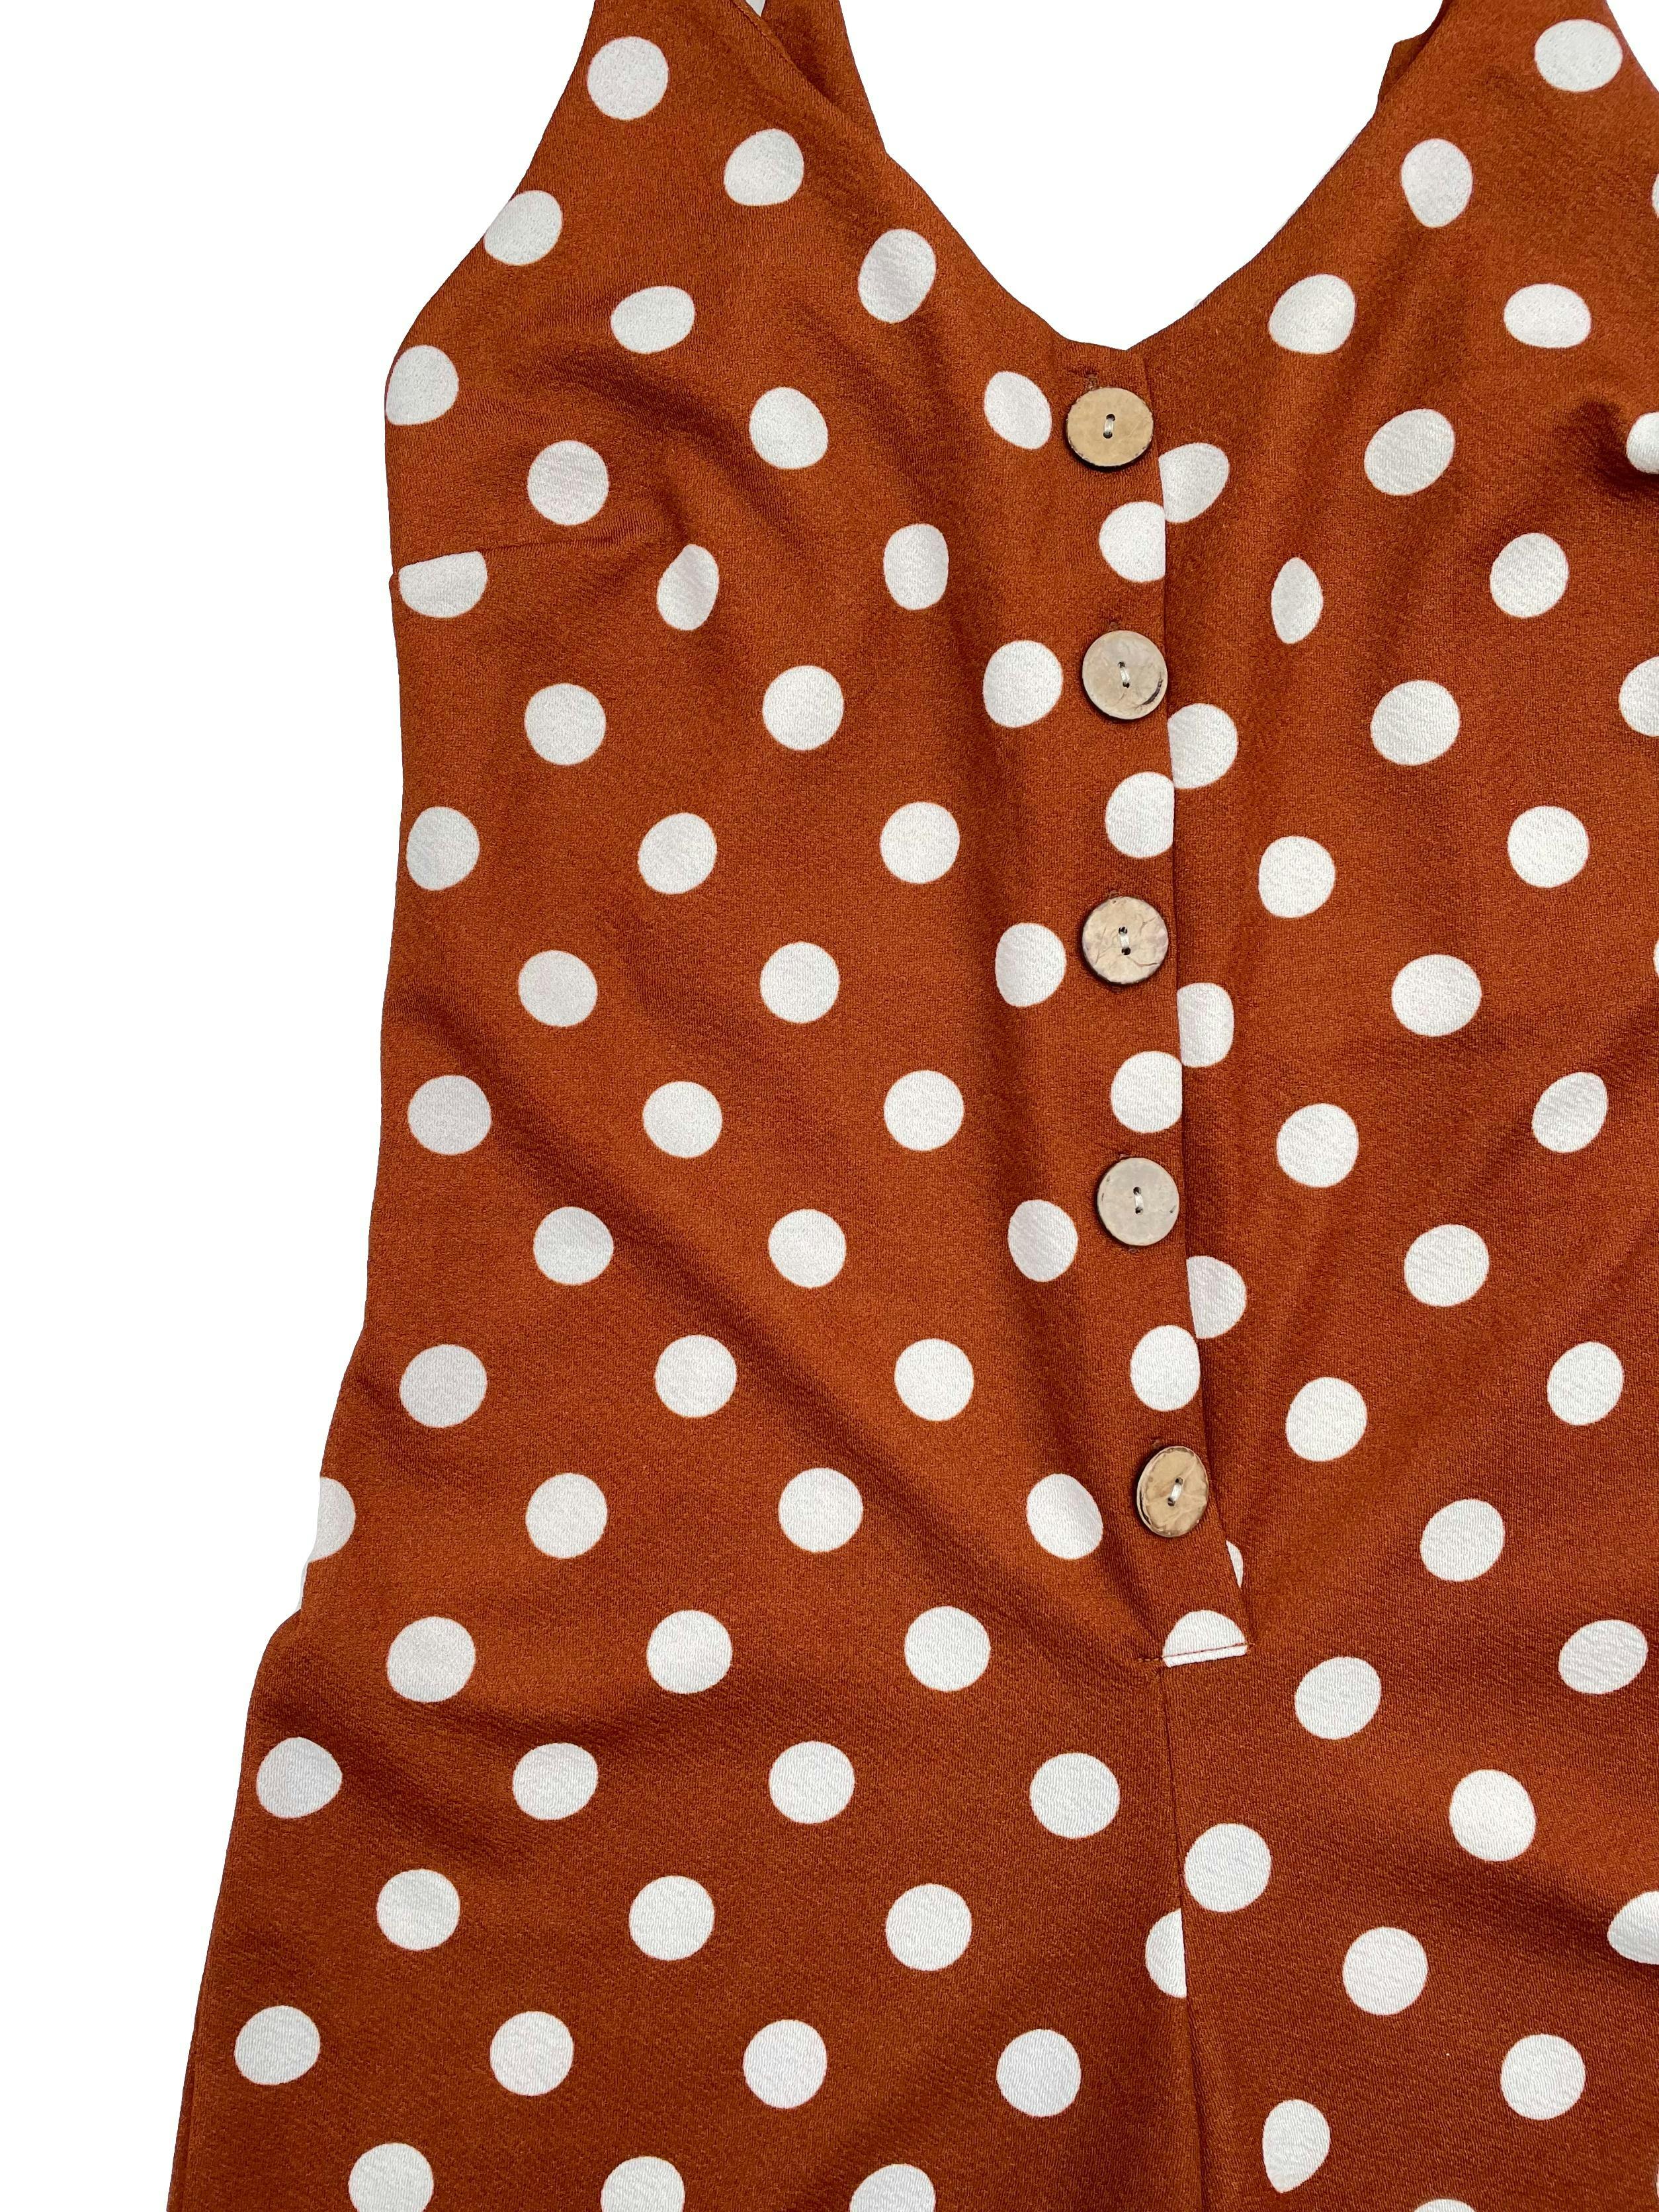 Enterizo Bo´hem color ladrillo con polka dots blancos, tirantes regulables, botones frontales, parte inferior tipo culotte. Busto 80cm, Largo 120cm.